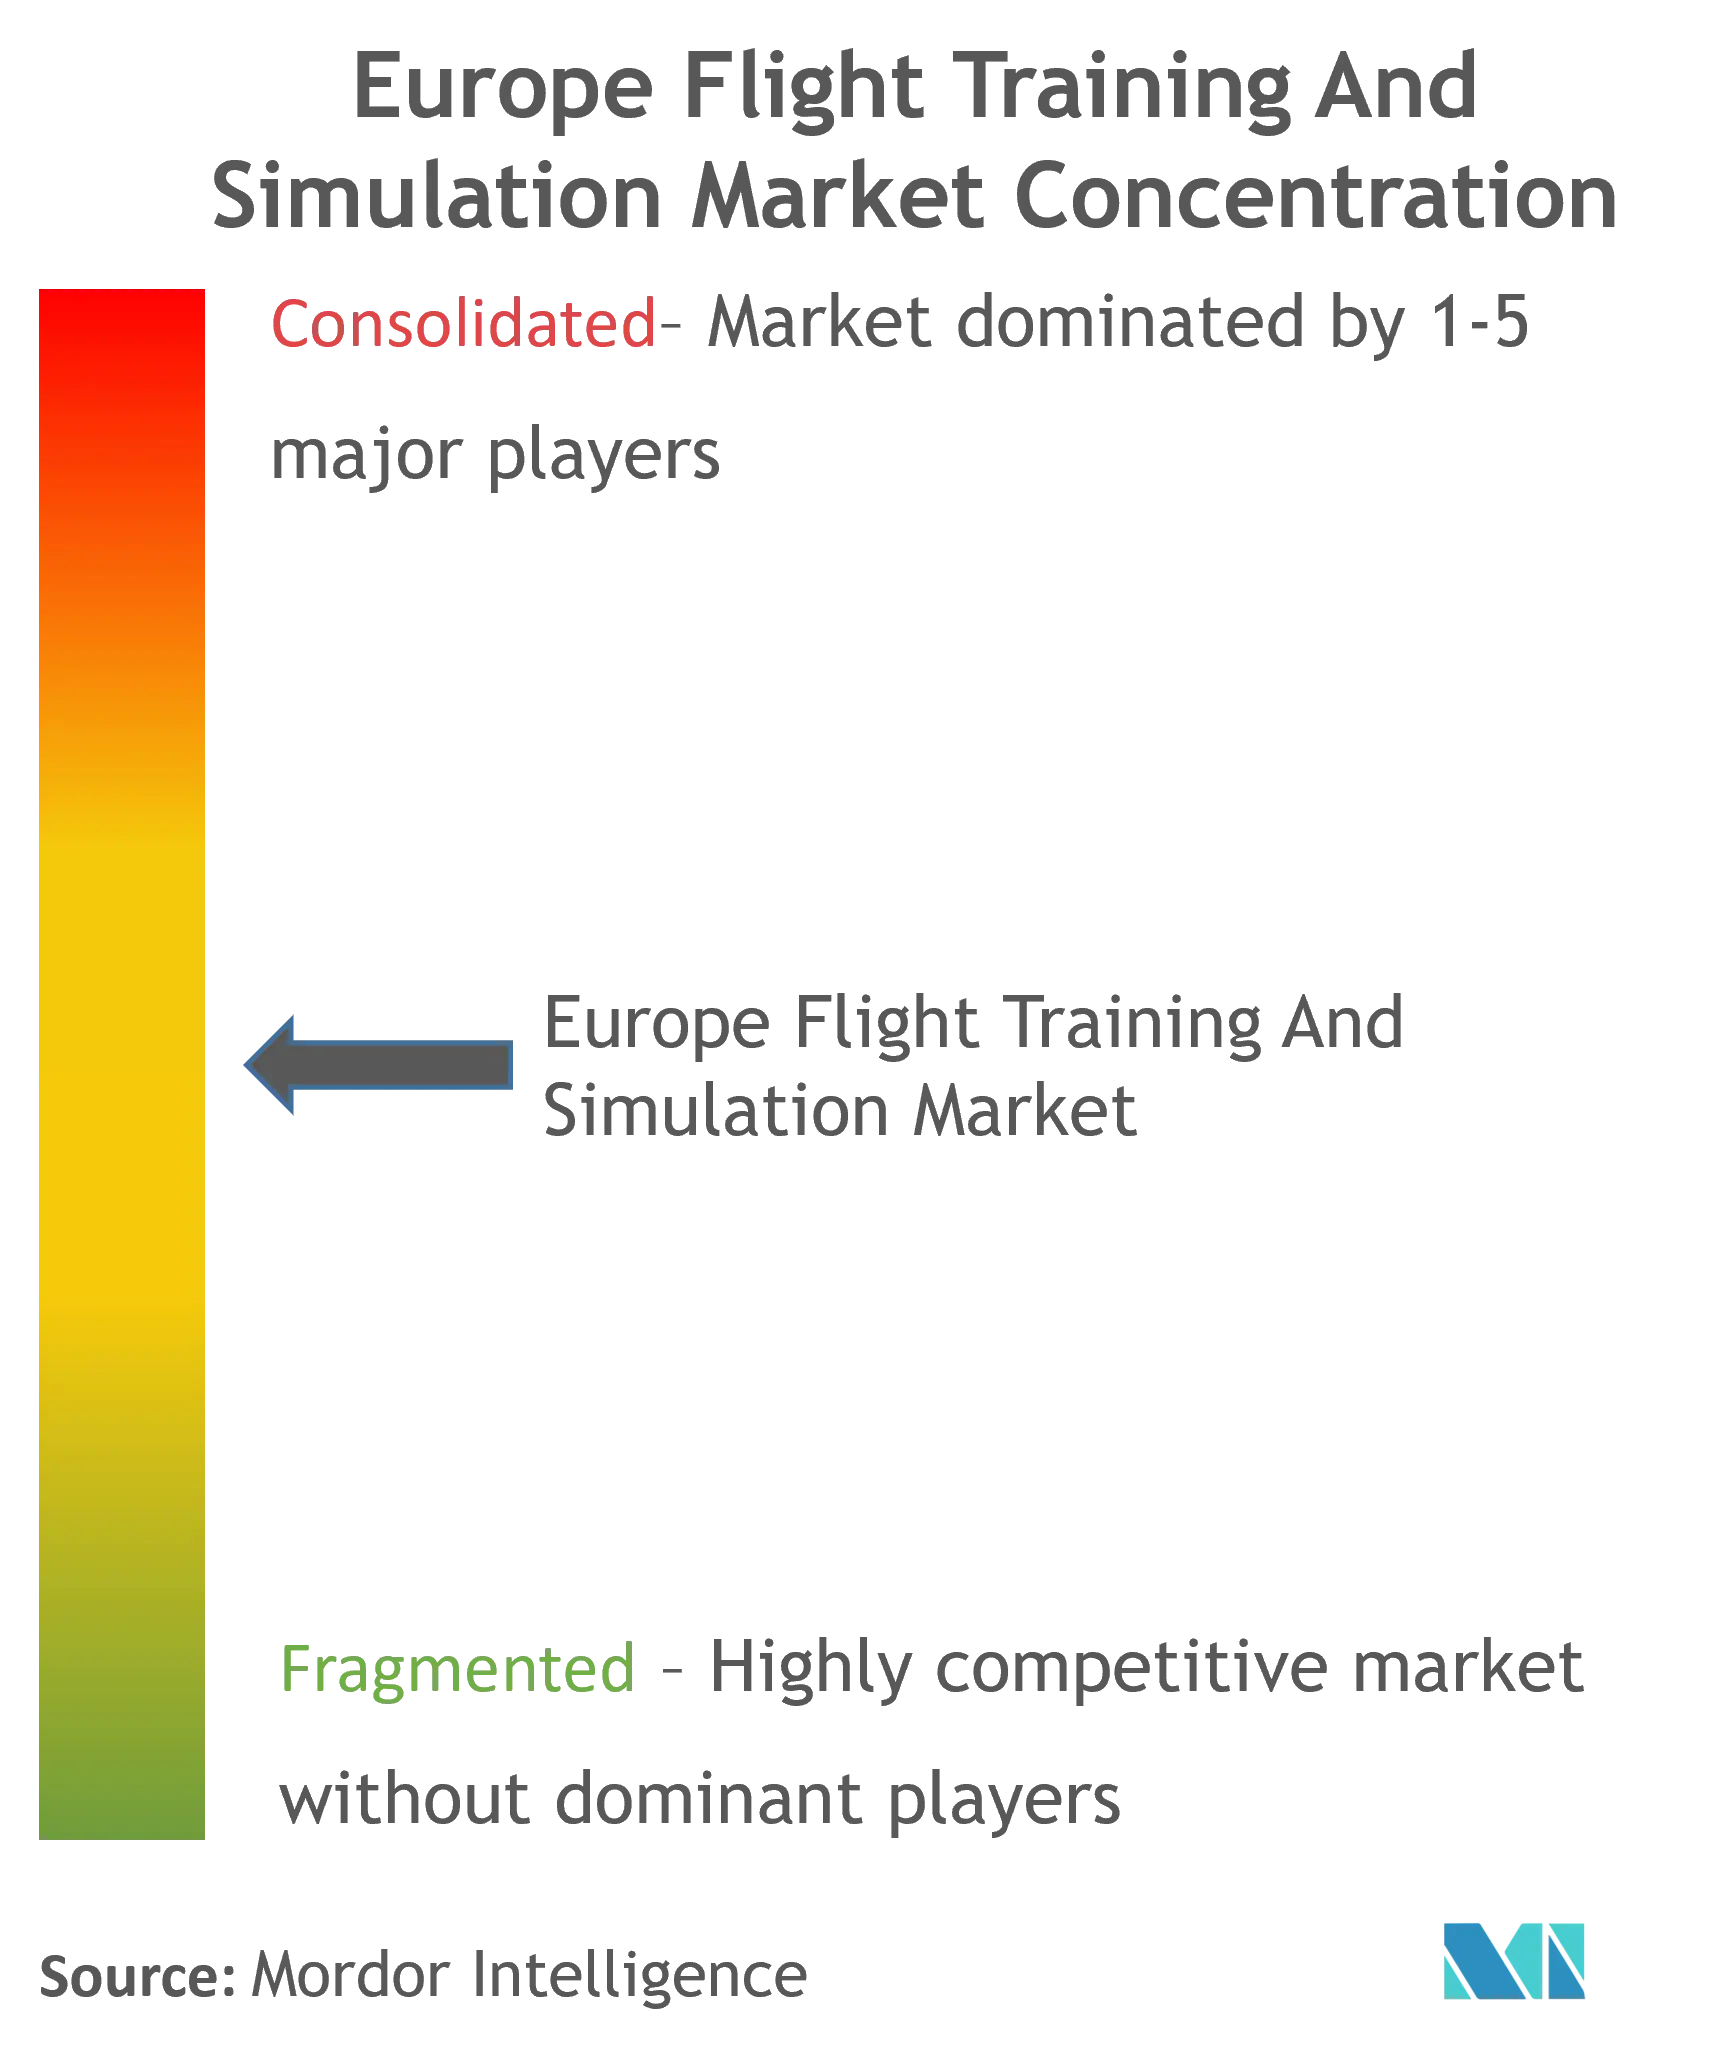 Marktkonzentration für Flugtraining und Simulation in Europa